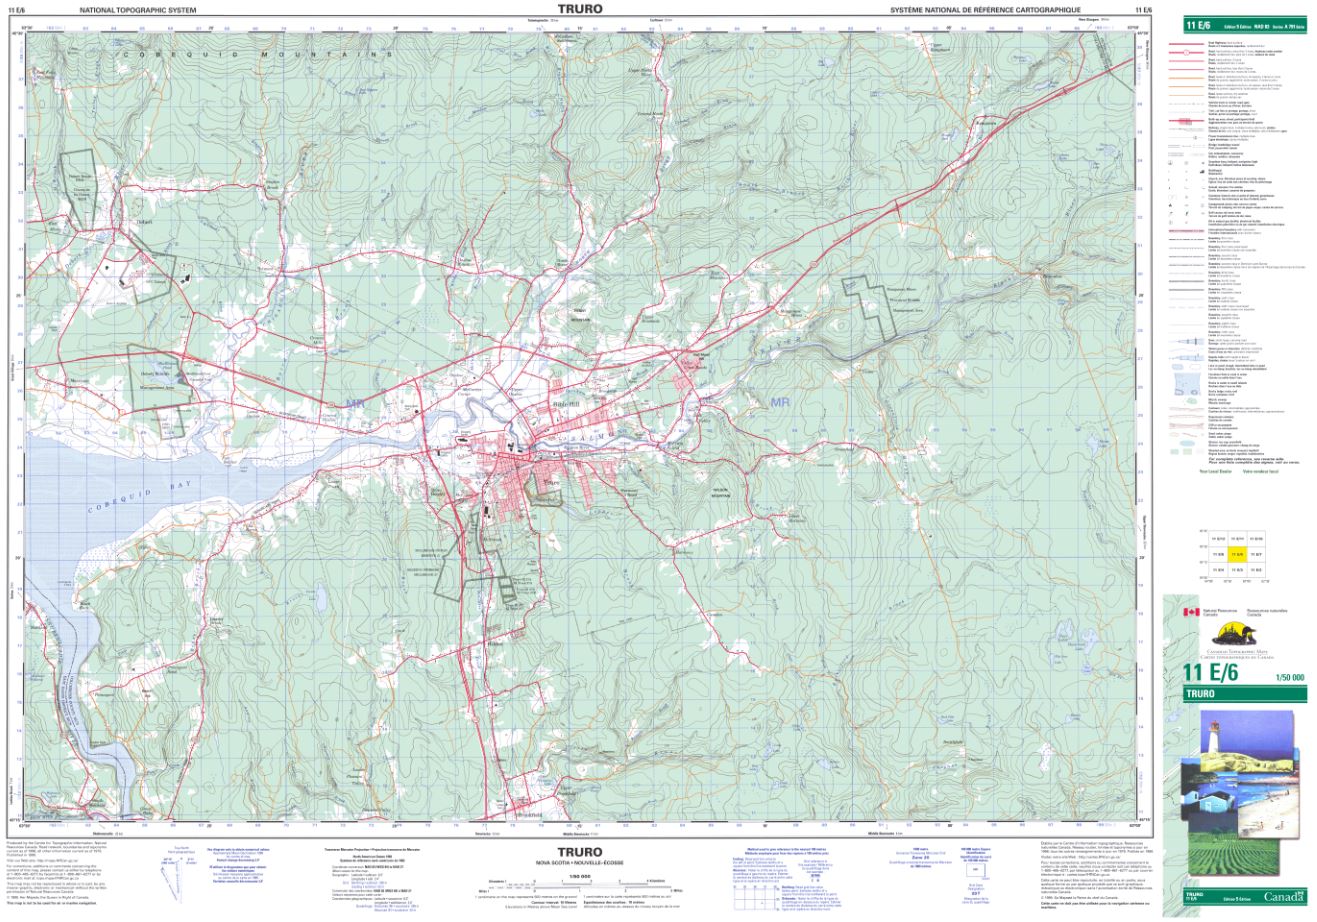 11e06 Truro Topographic Map Nova Scotia Maps And More 4293